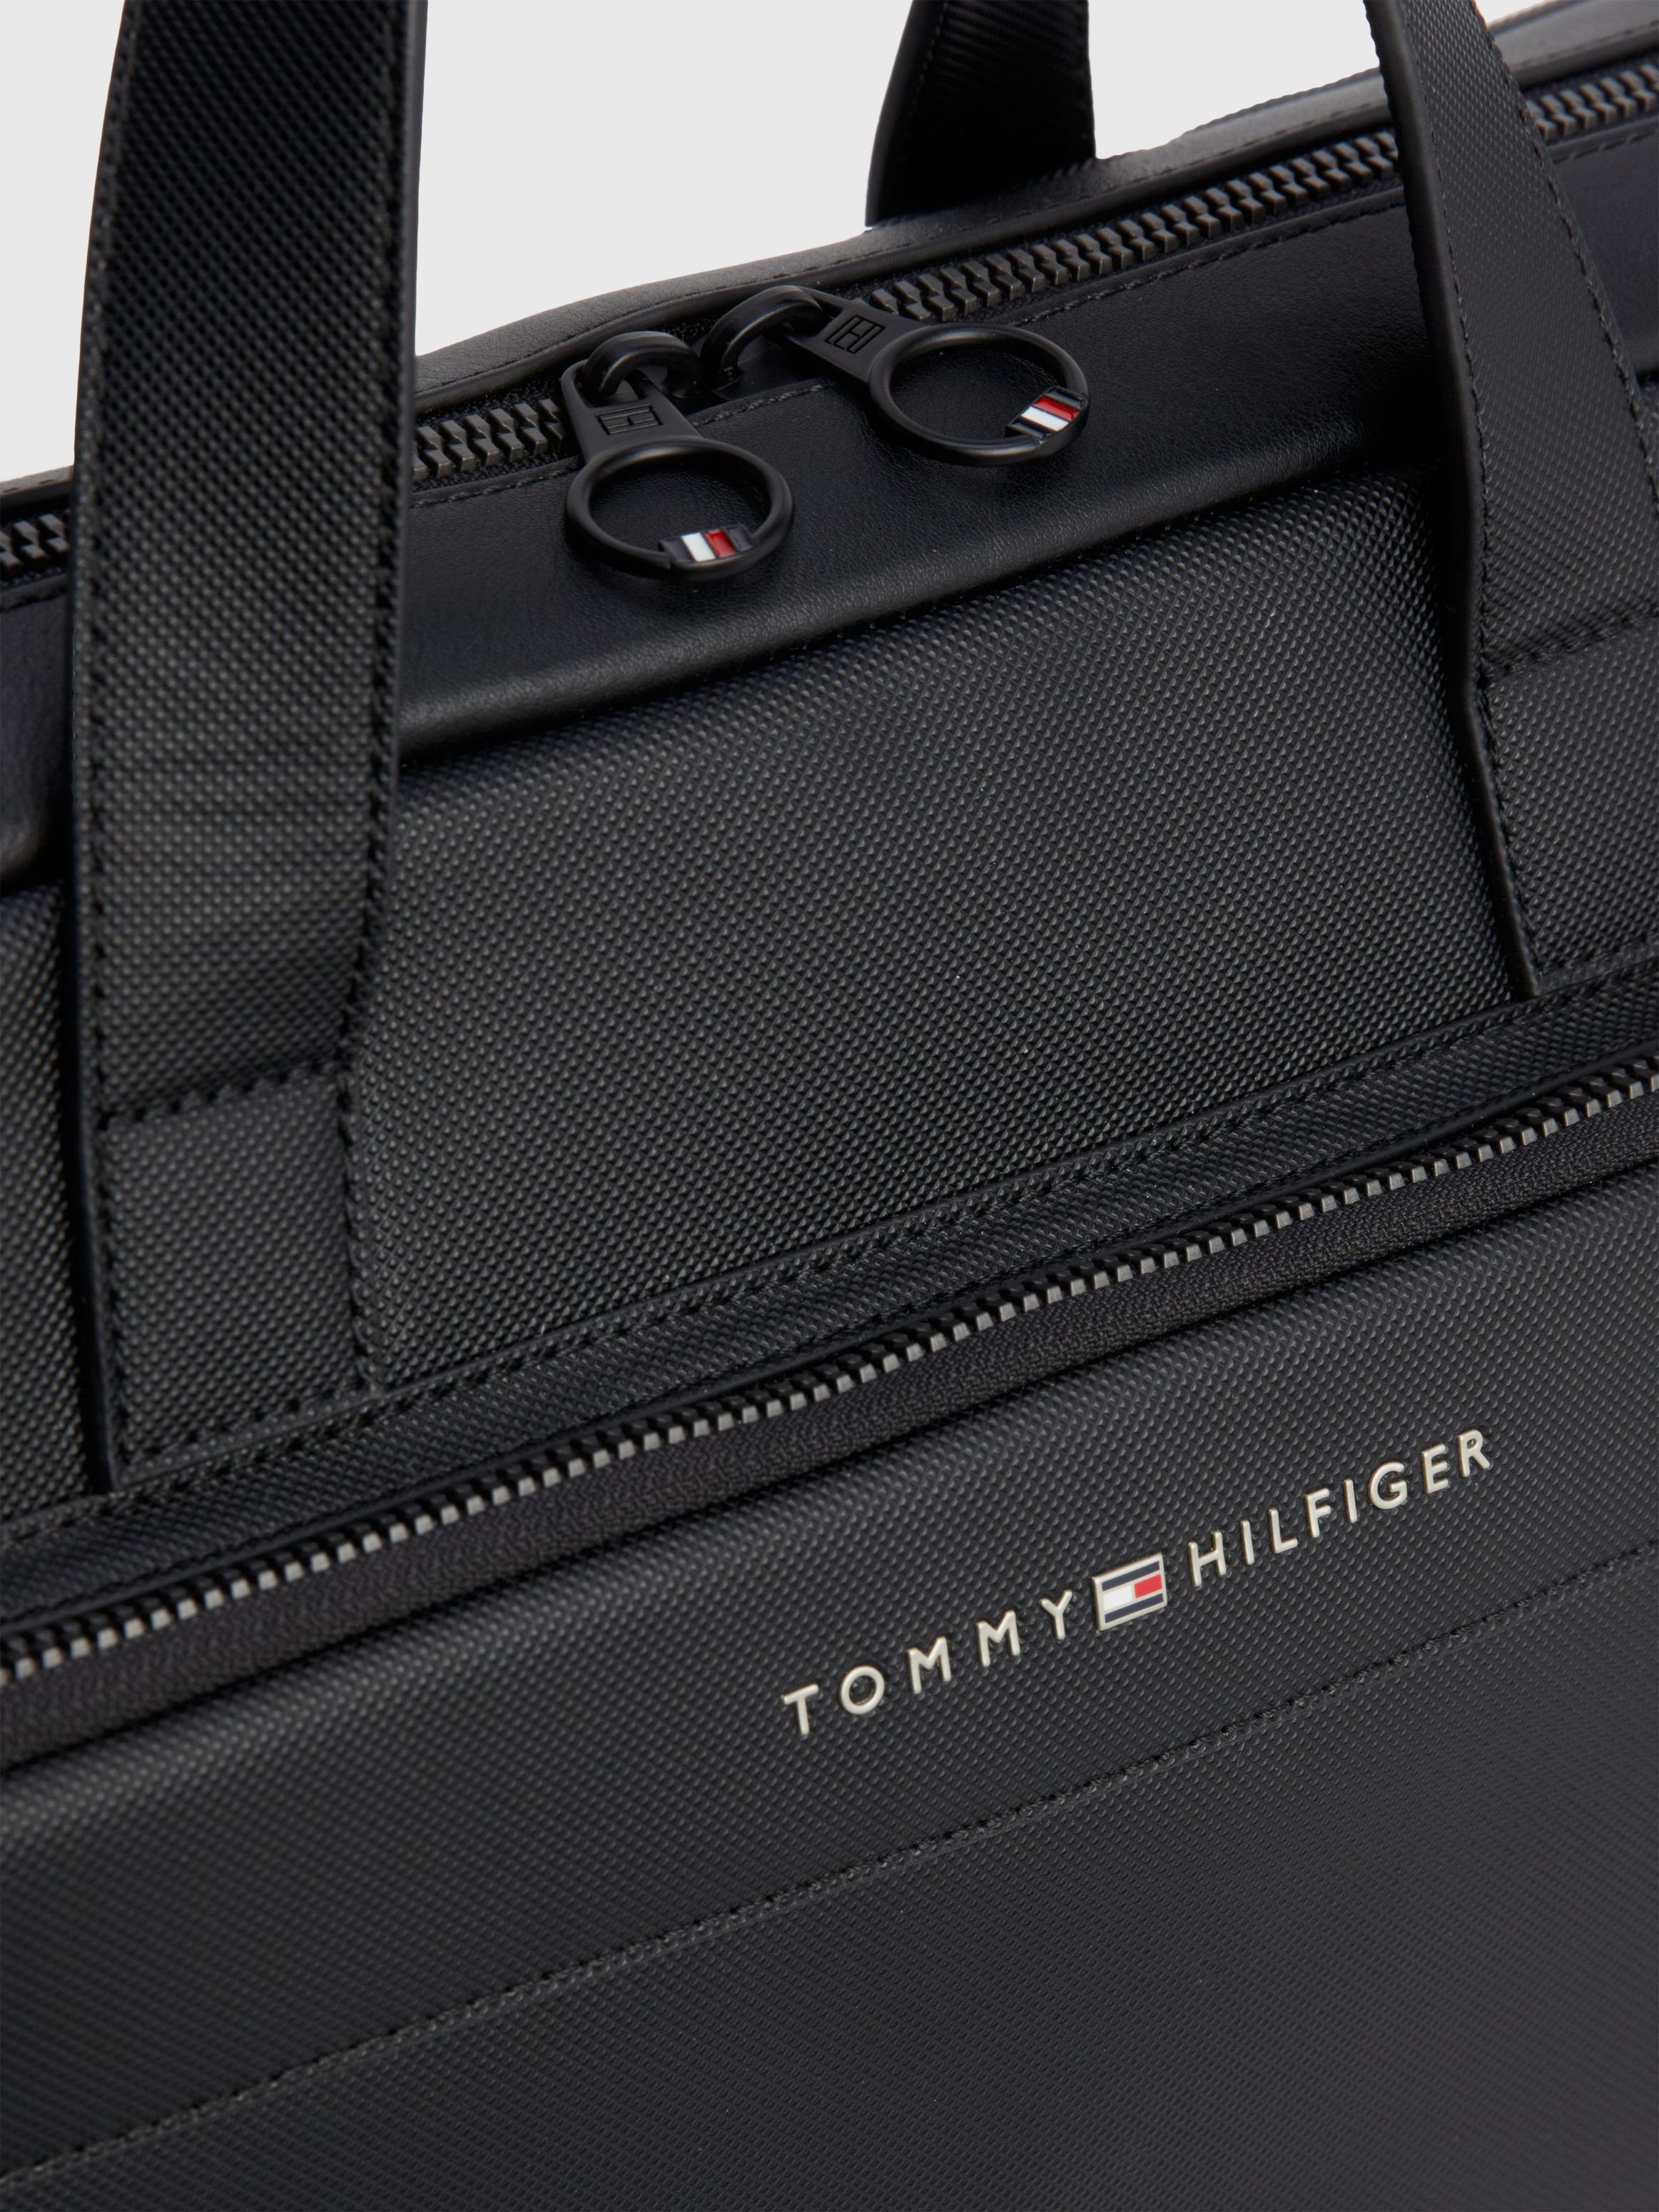 Pique Textured Slim Laptop Bag | Tommy Hilfiger